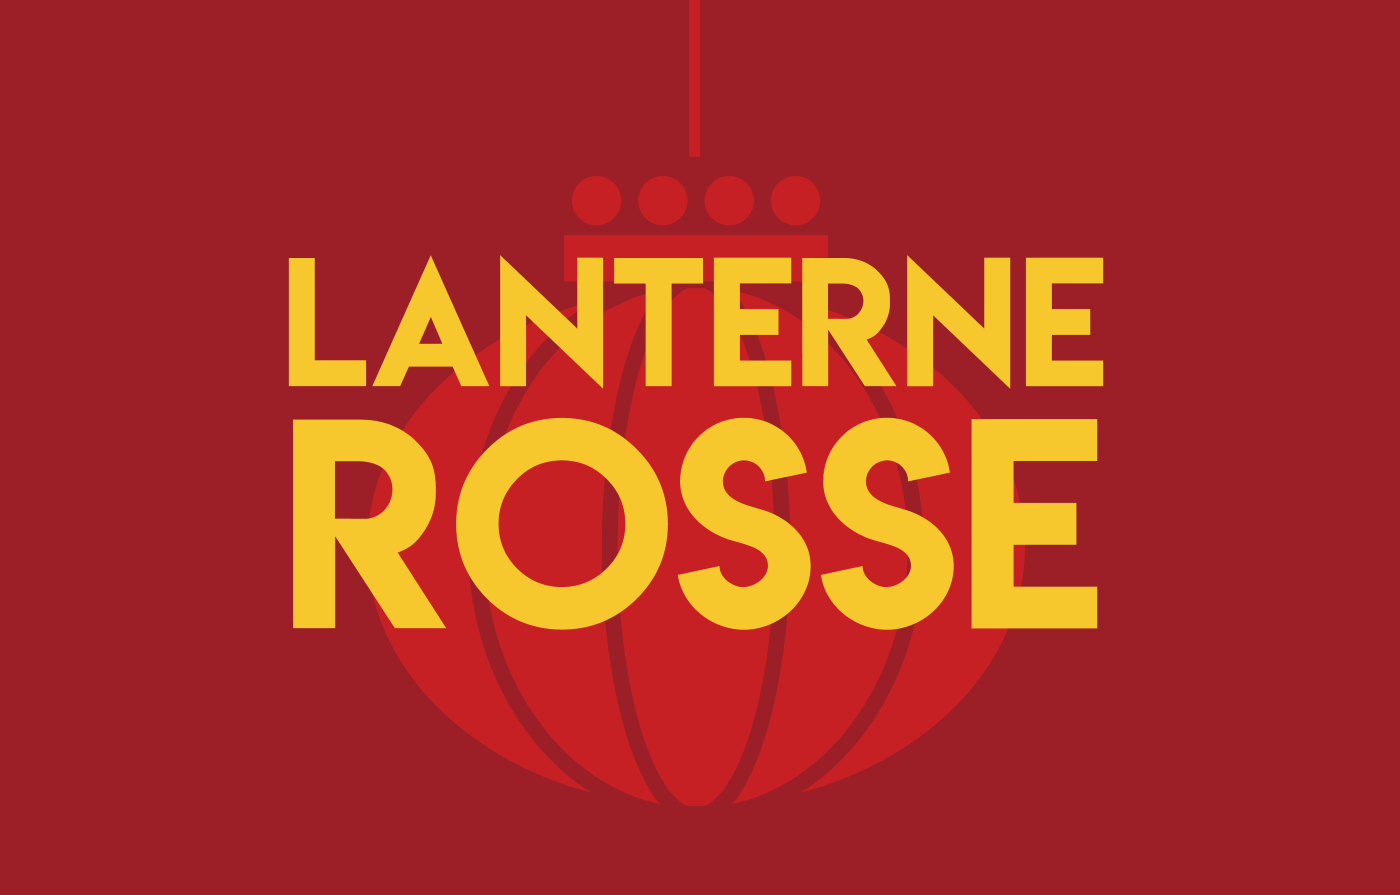 Lanternerosse.png